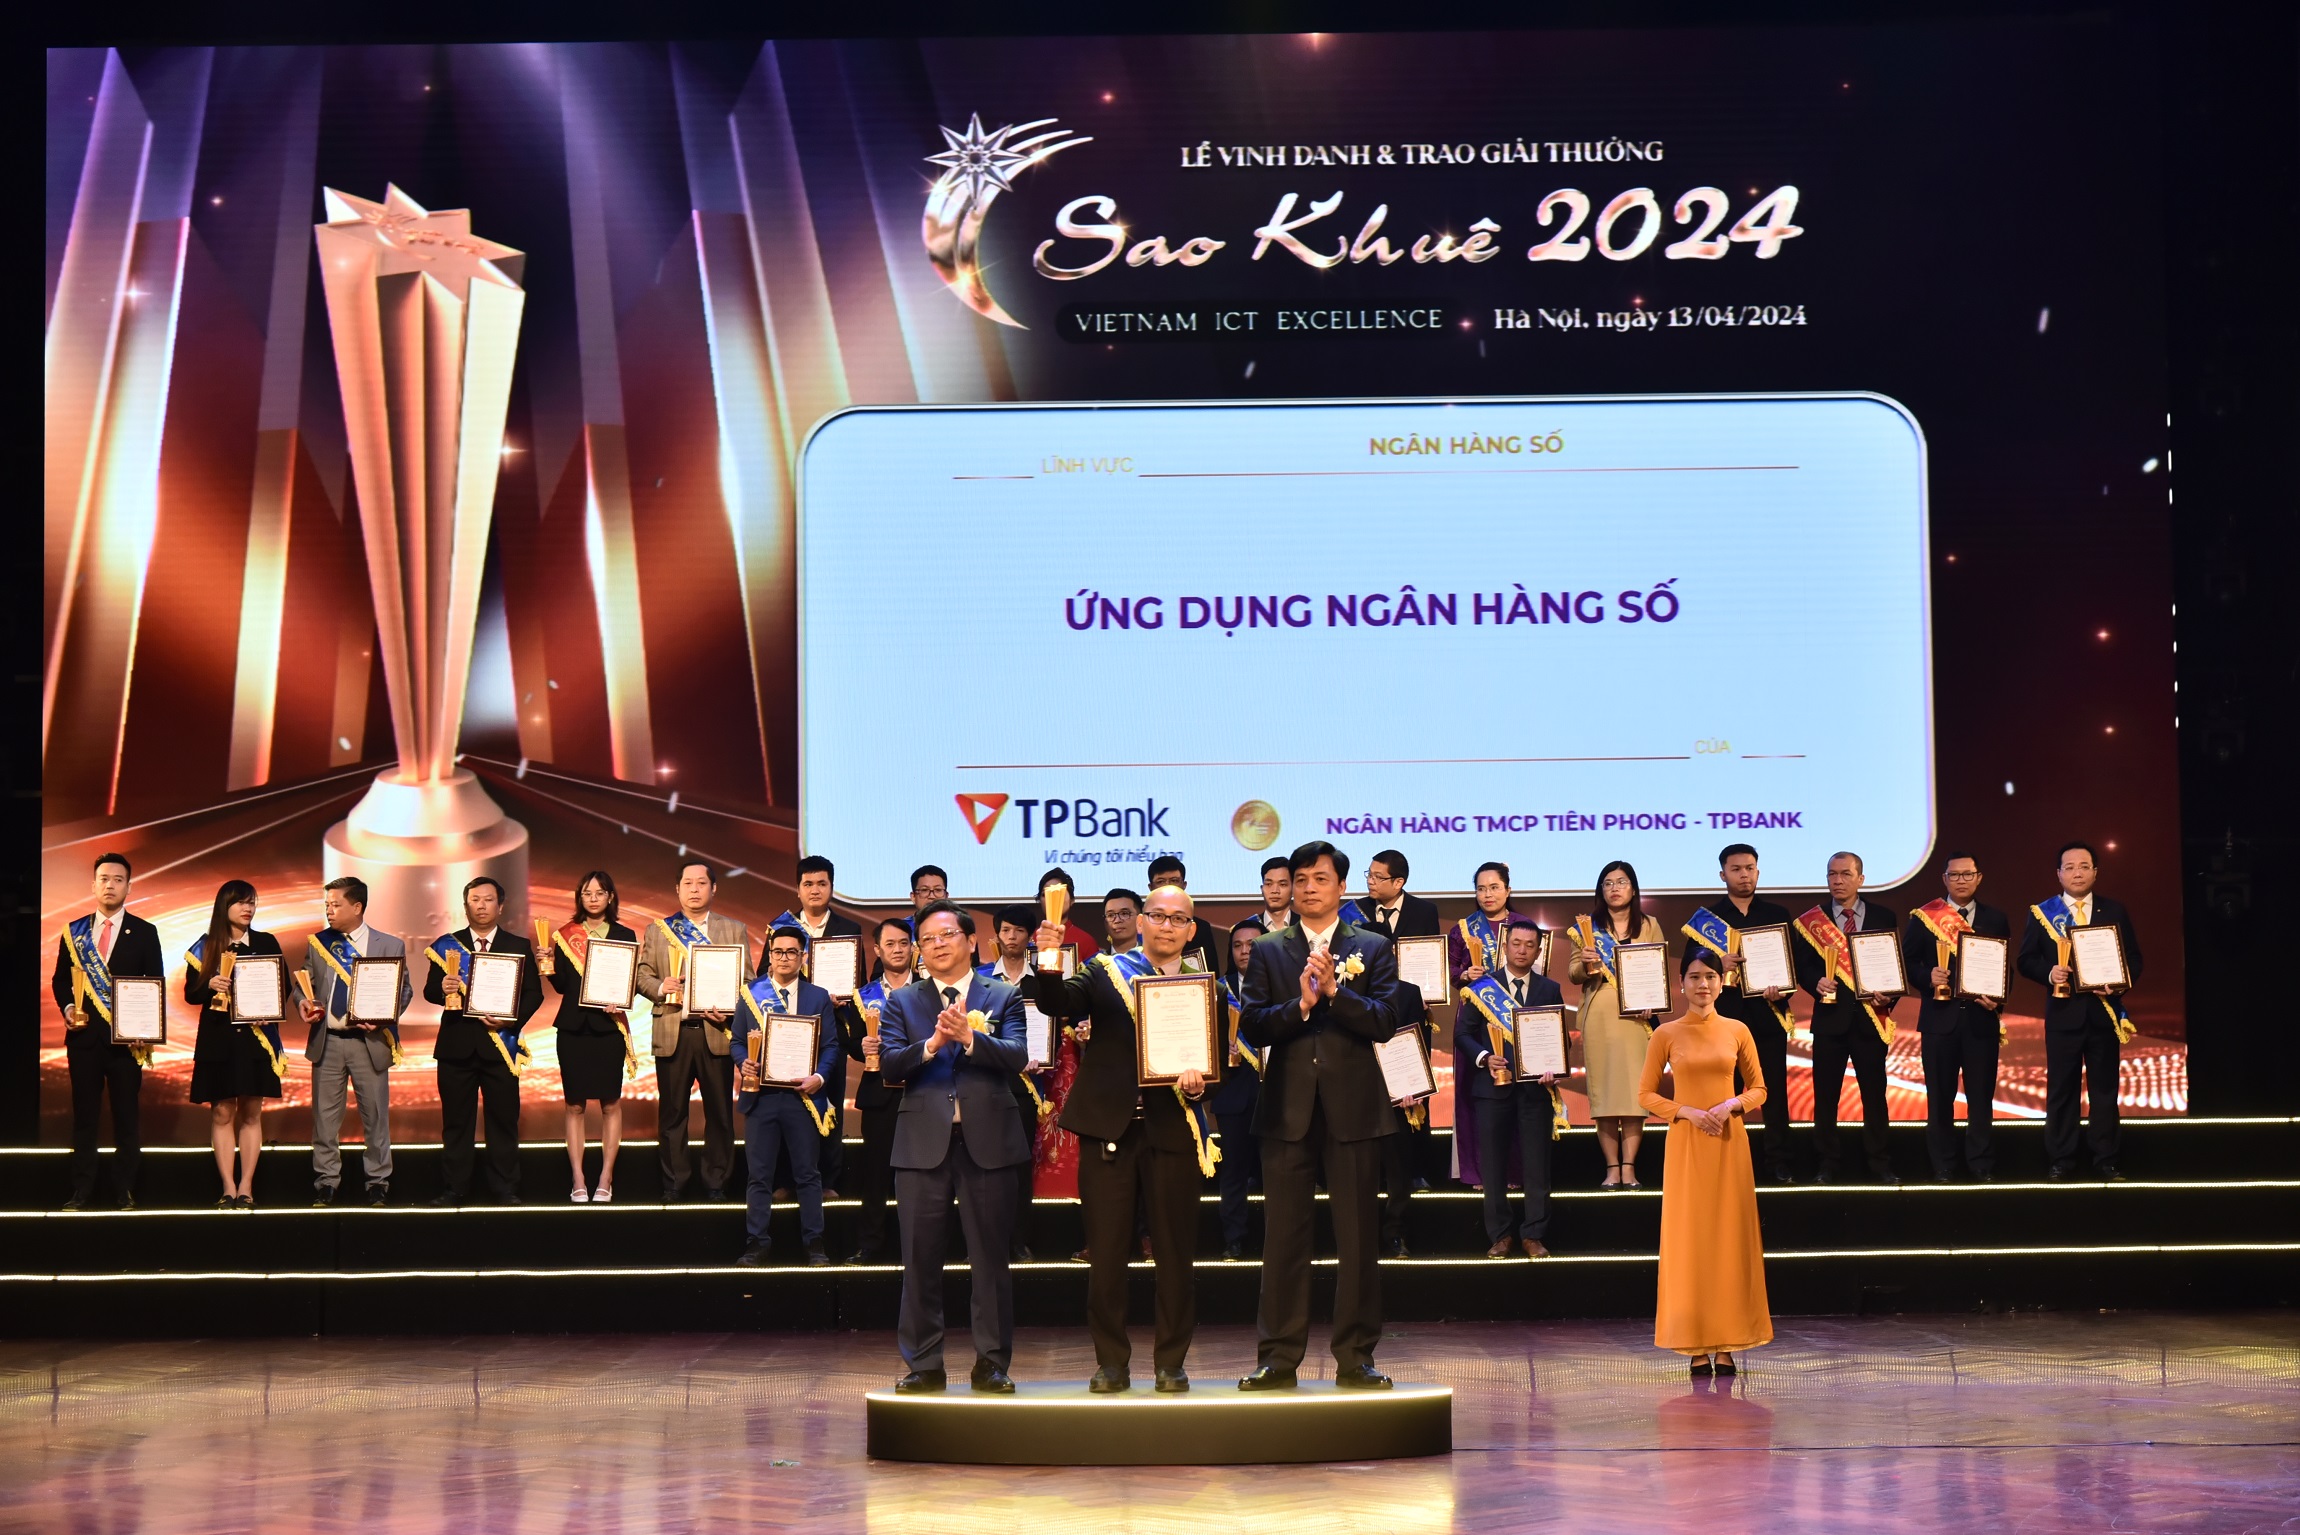 TPBank lập “hat-trick” giải thưởng tại Lễ vinh danh và trao giải thưởng Sao Khuê 2024- Ảnh 1.